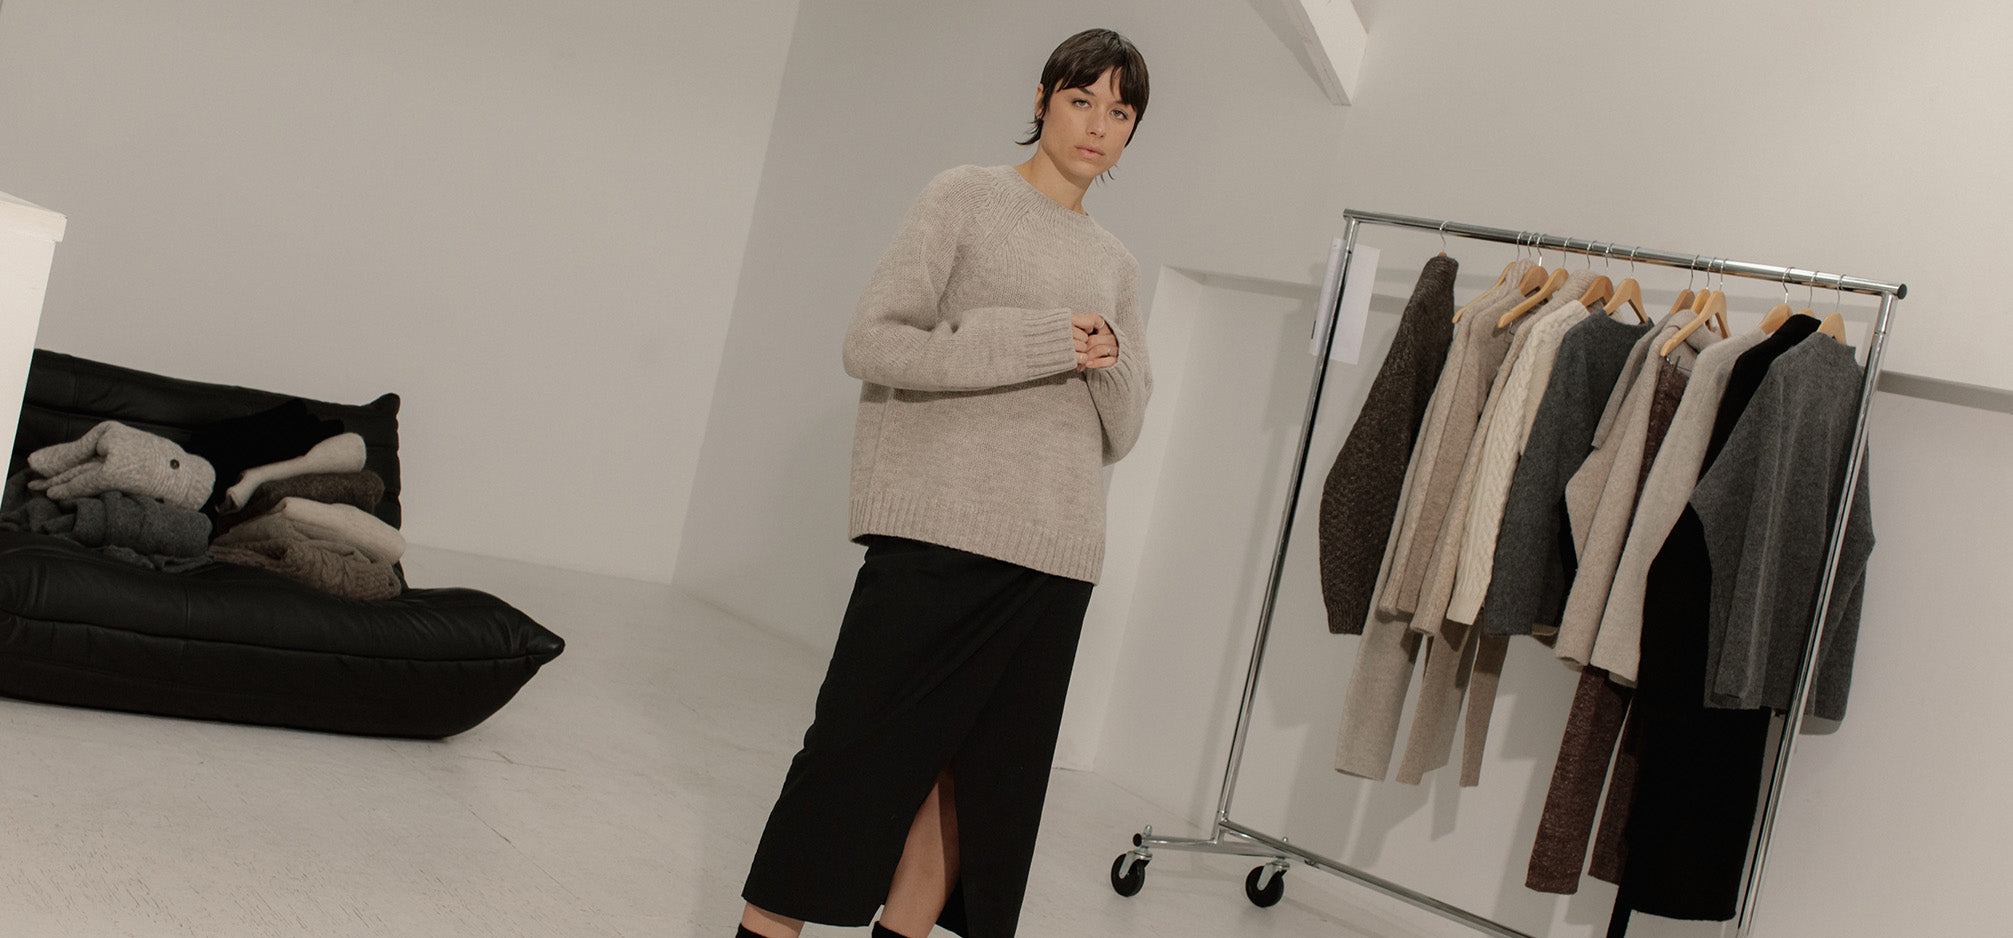 Model wearing cozy knit sweater standing in Bare Knitwear show room